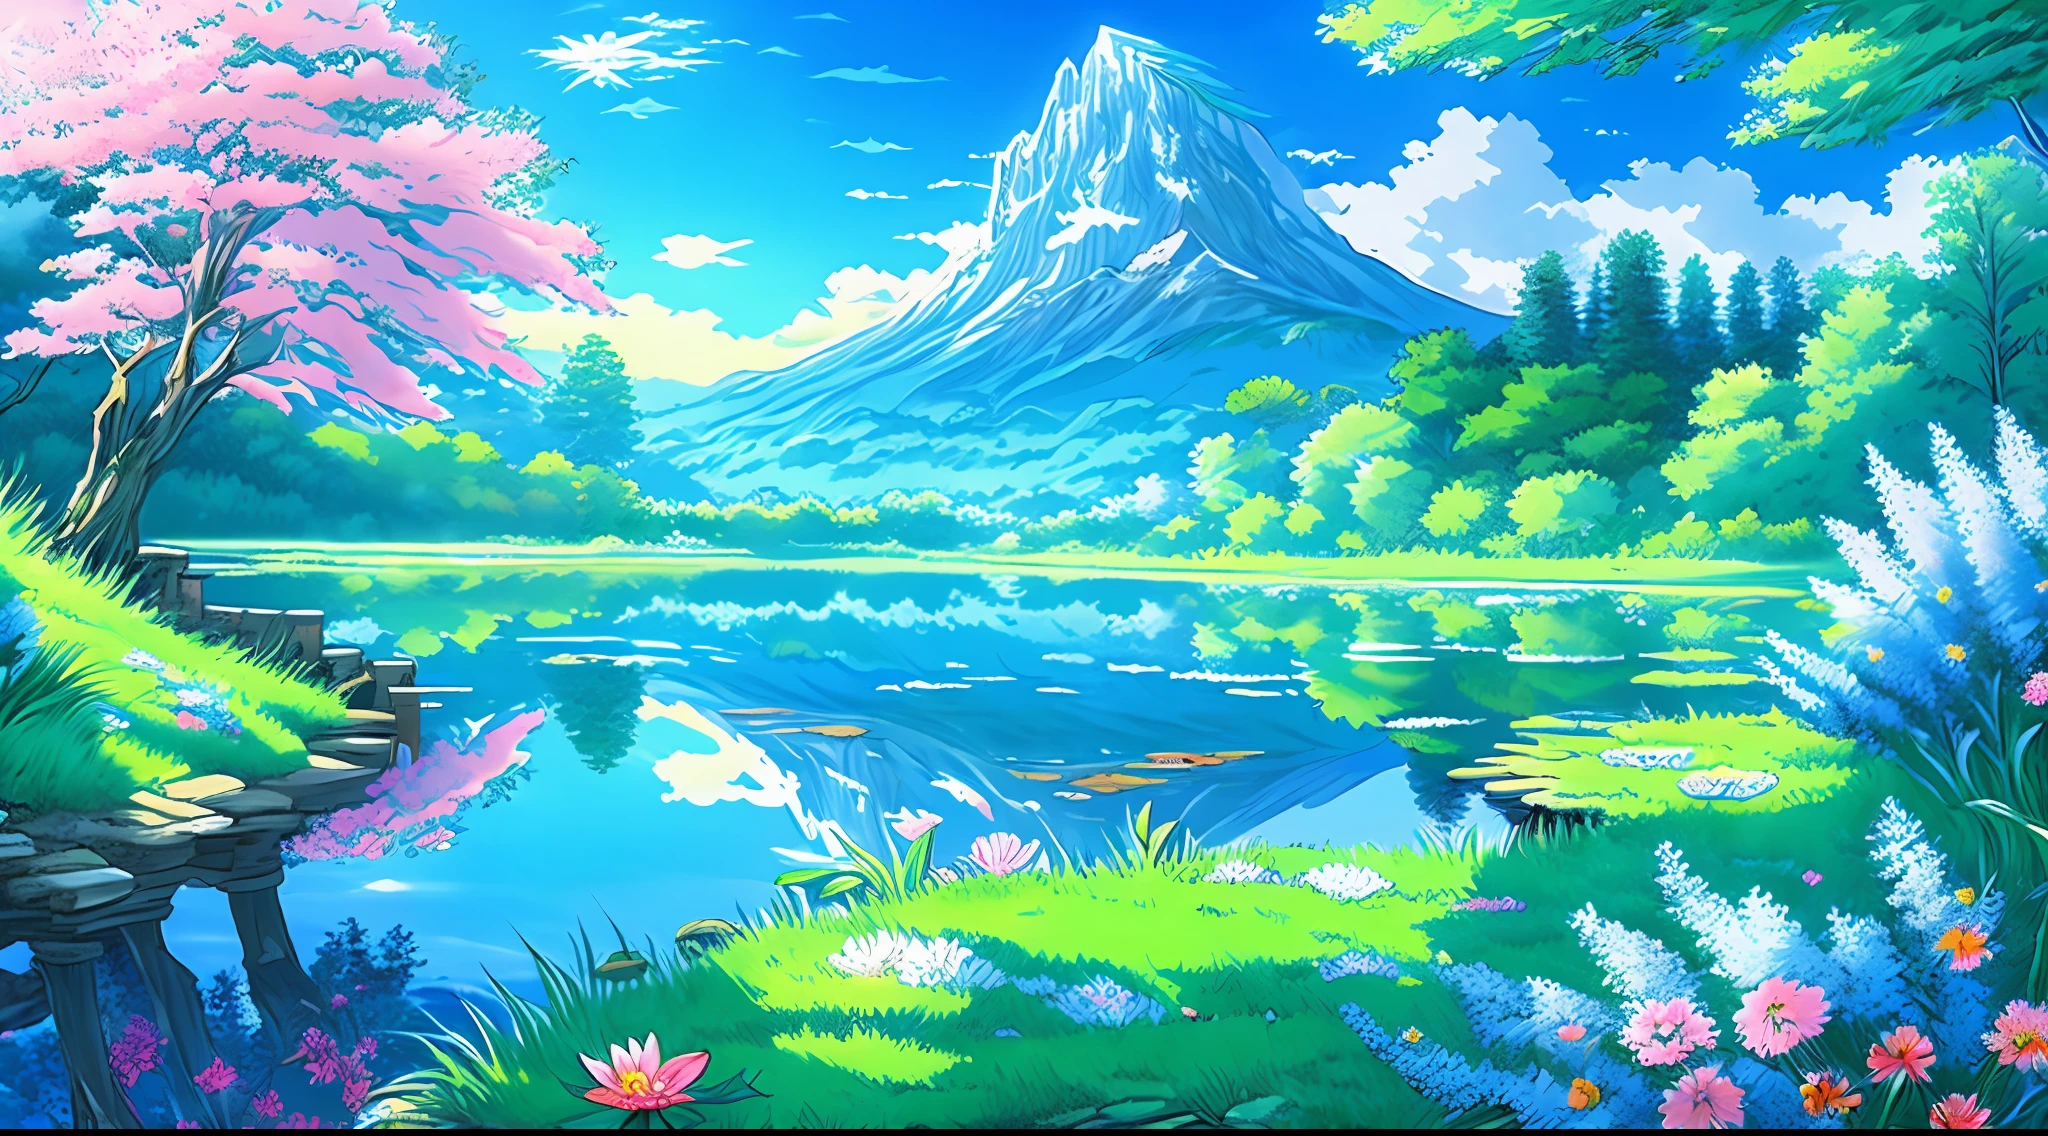 (beste Qualität),(Meisterwerk),(Extrem detailliert),(4K-Auflösung),(extrem detailliert) (detailliertes Anime-Szenerie-Hintergrundbild mit wunderschönen Farben und Beleuchtung), ruhig und traumhaft, lebendige Landschaft mit hoch aufragenden Bergen, kaskadierende Wasserfälle, üppige Wälder, und leuchtende Blumen, Ein ruhiger Teich, in dem sich der klare blaue Himmel und die flauschigen Wolken spiegeln, die sanfte Brise trägt den süßen Duft blühender Blumen.